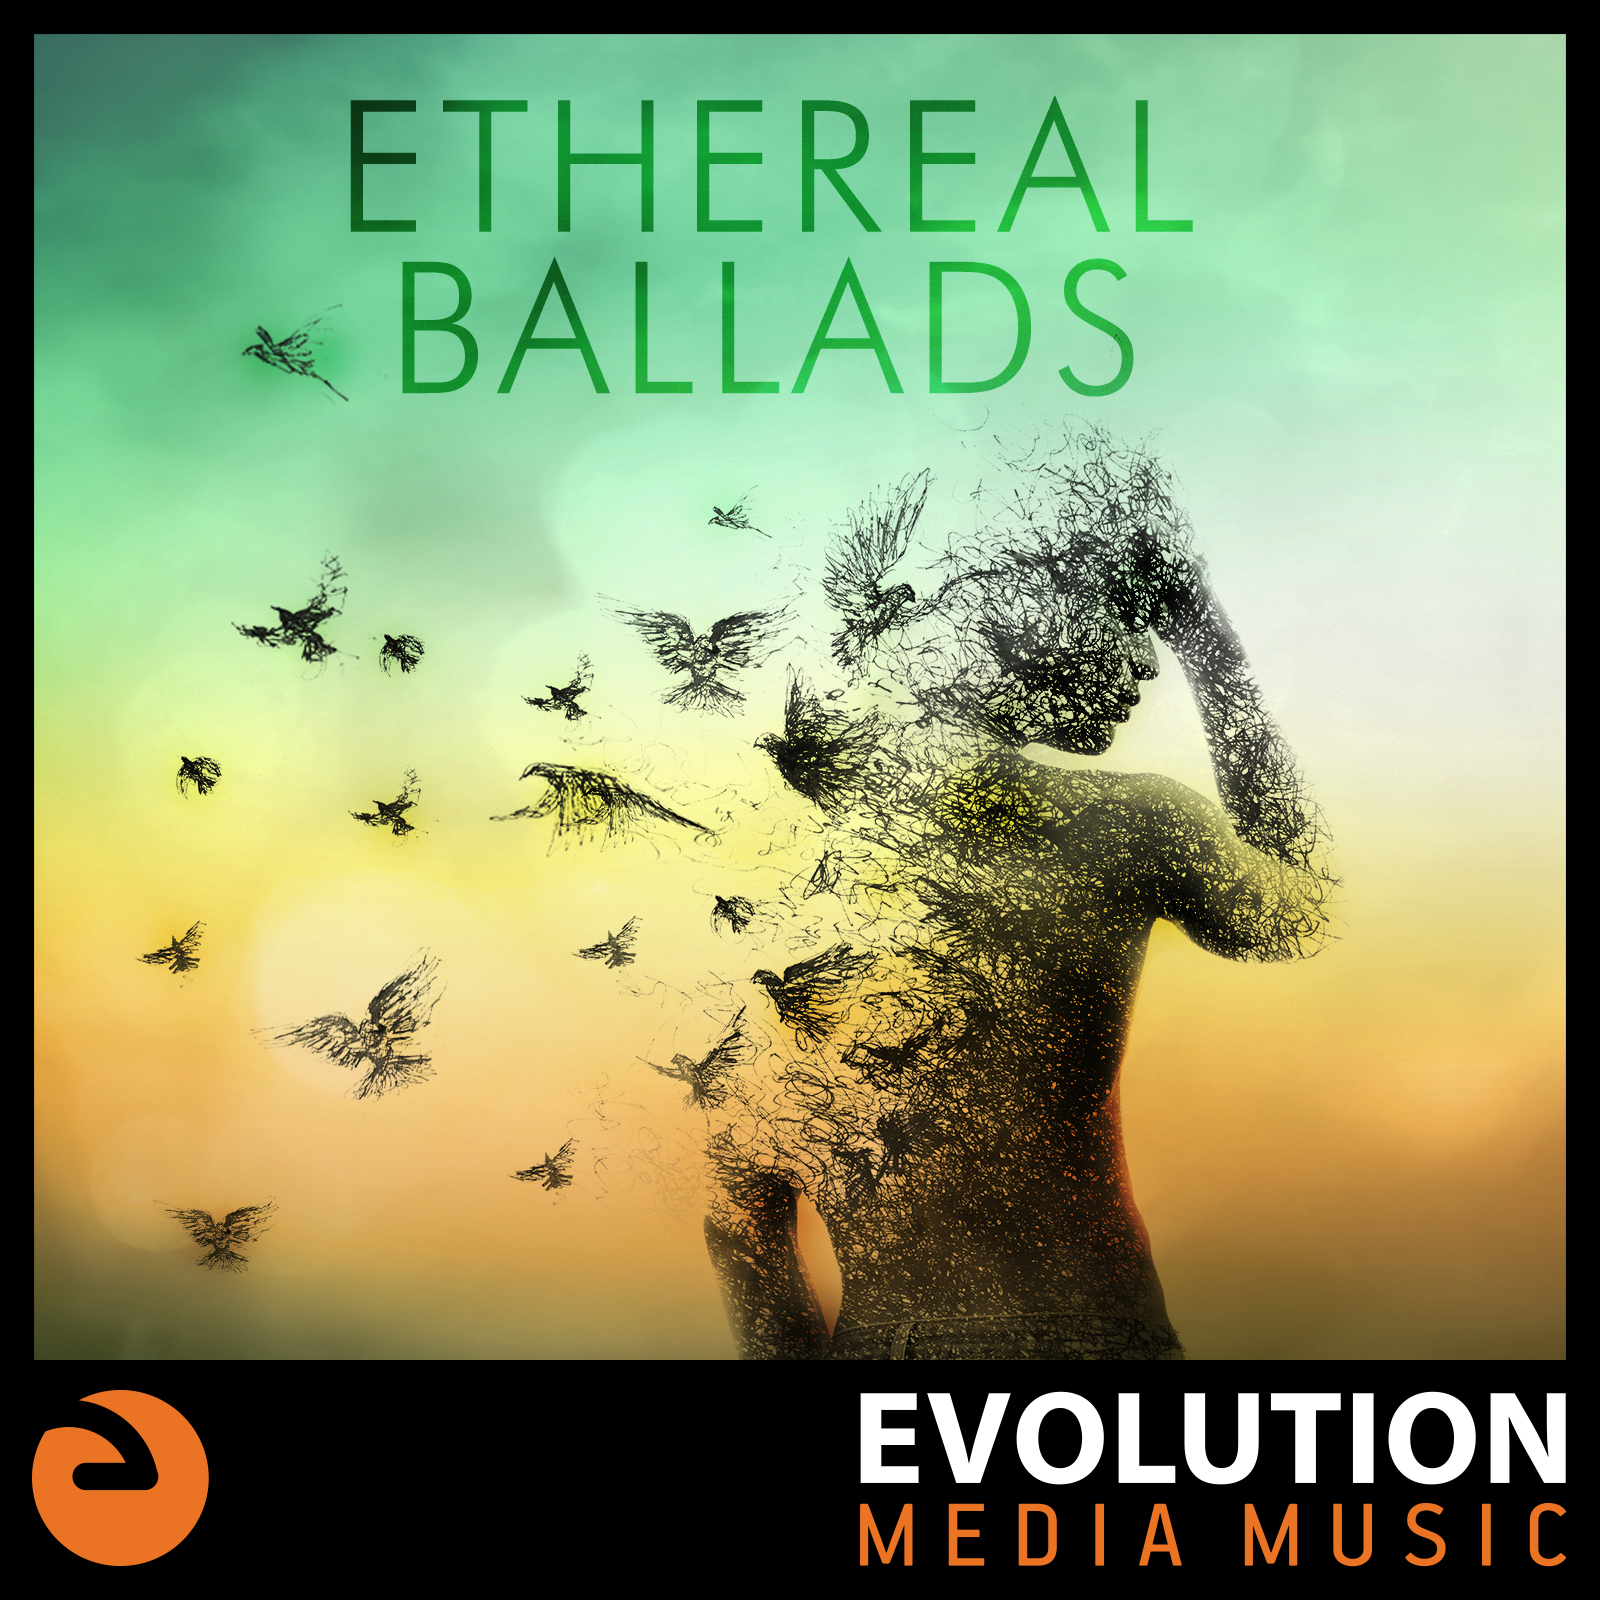 Ethereal Ballads